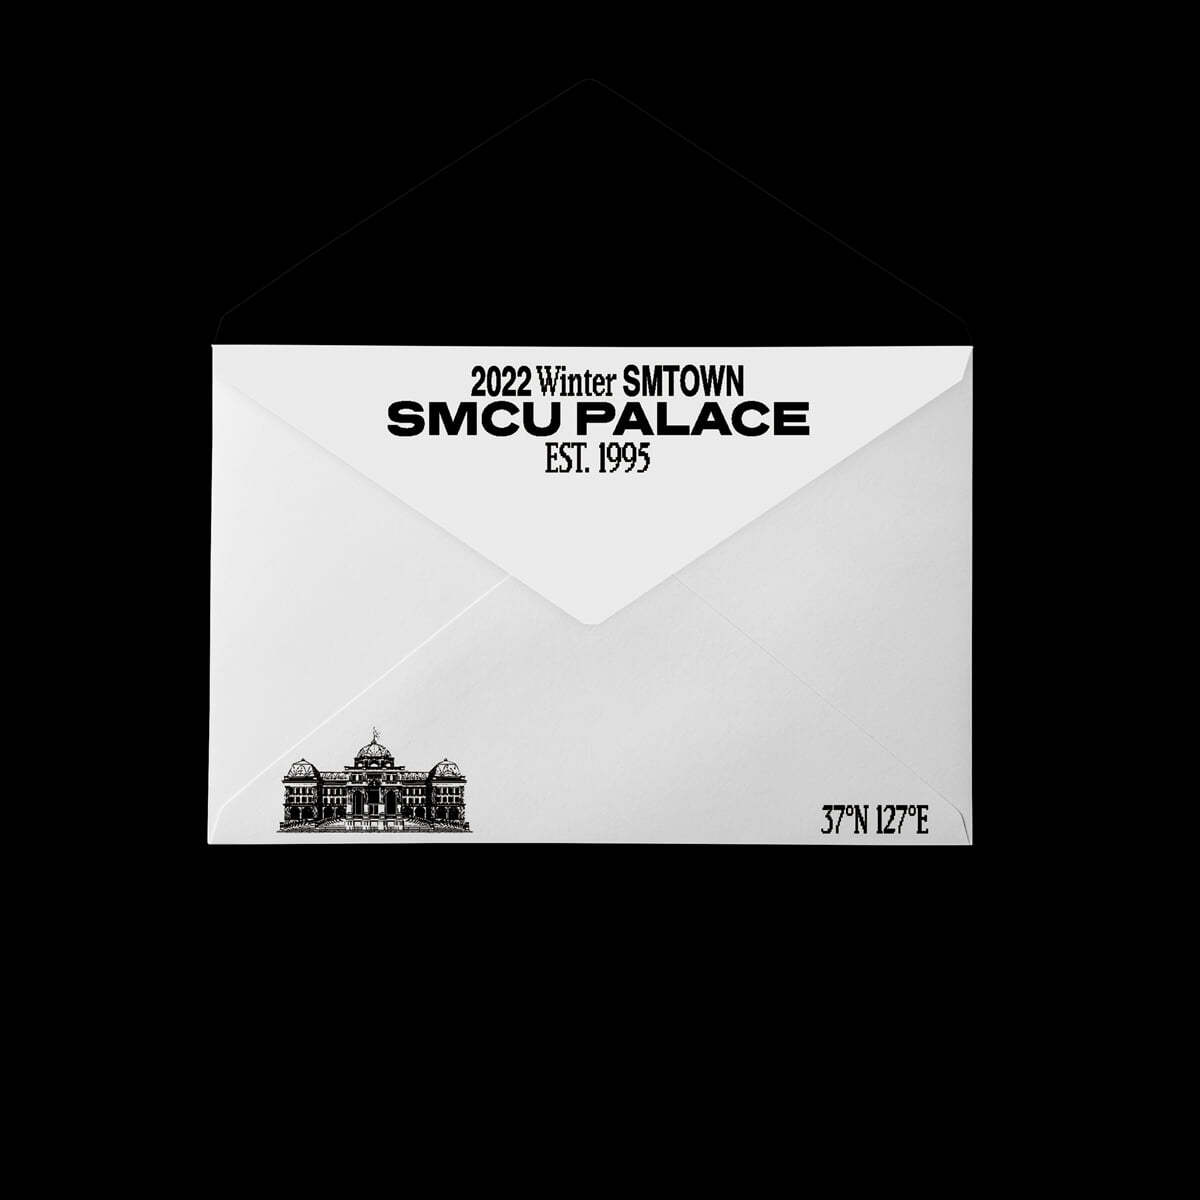 엔시티 드림 (NCT DREAM) - 2022 Winter SMTOWN : SMCU PALACE (GUEST. NCT DREAM) [Membership Card Ver.](스마트앨범)